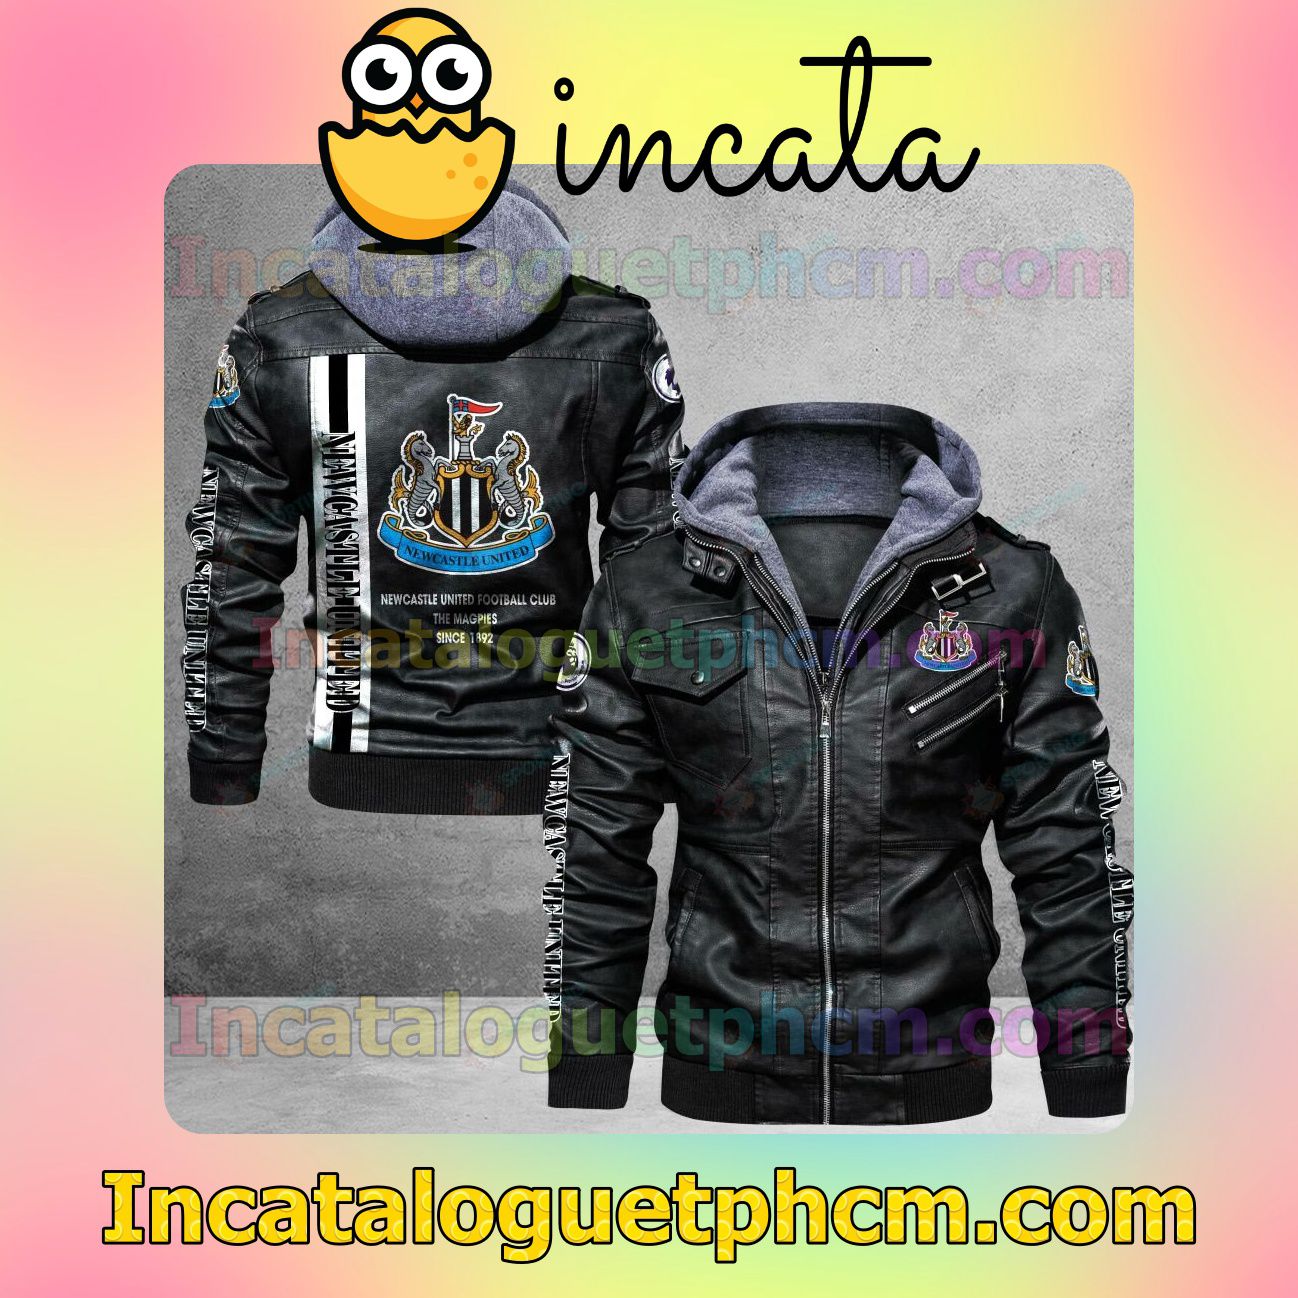 Newcastle United F.C Brand Uniform Leather Jacket